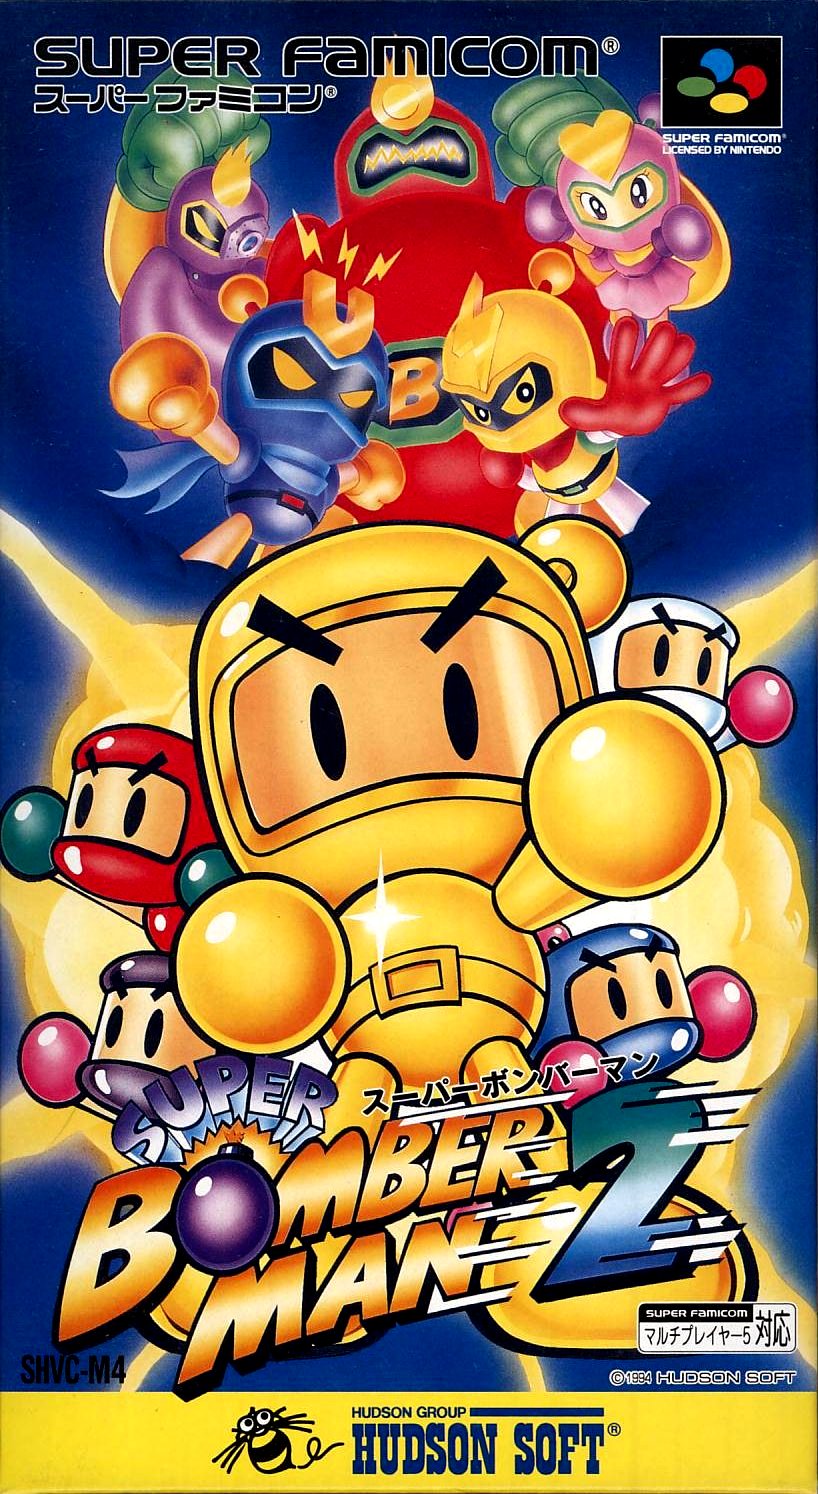 Super Bomberman 2 - Super Nintendo, Super Nintendo